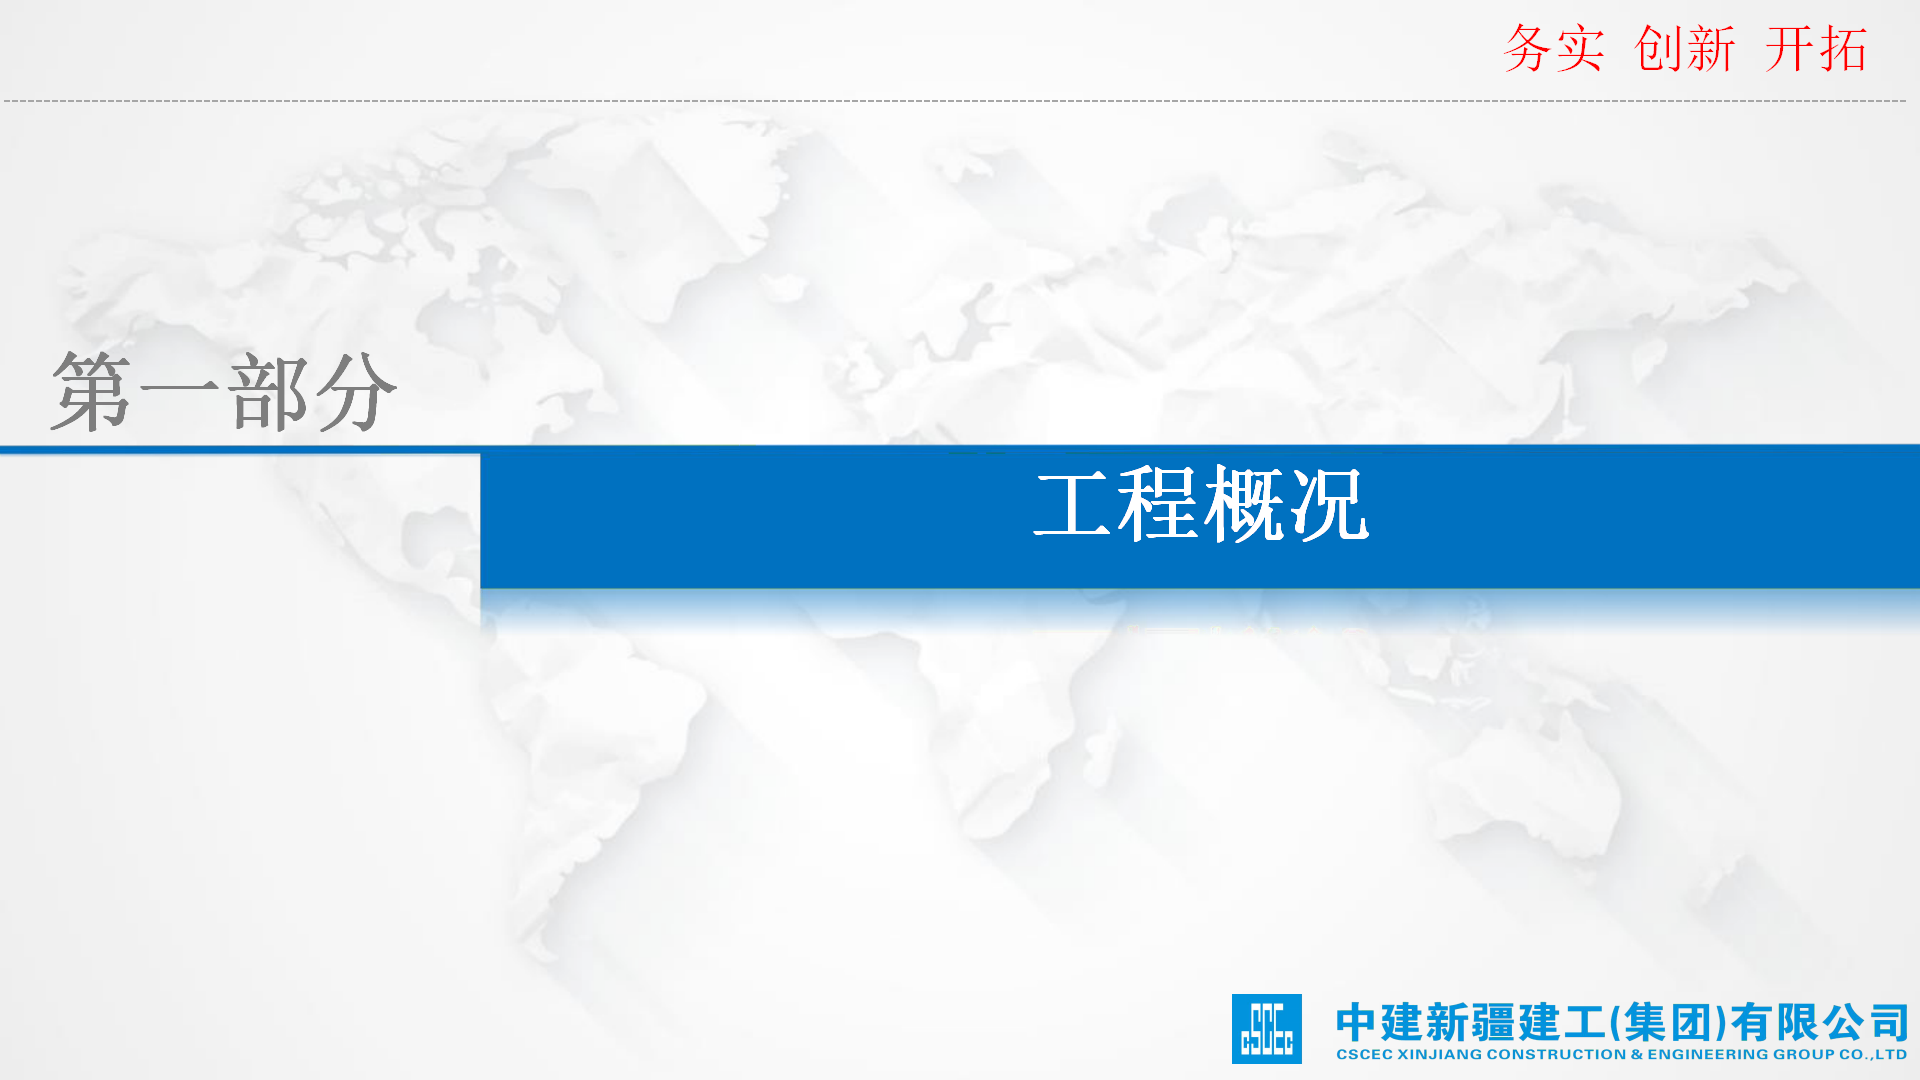 于田机场项目创中国安装工程优质奖经验交流插图(3)